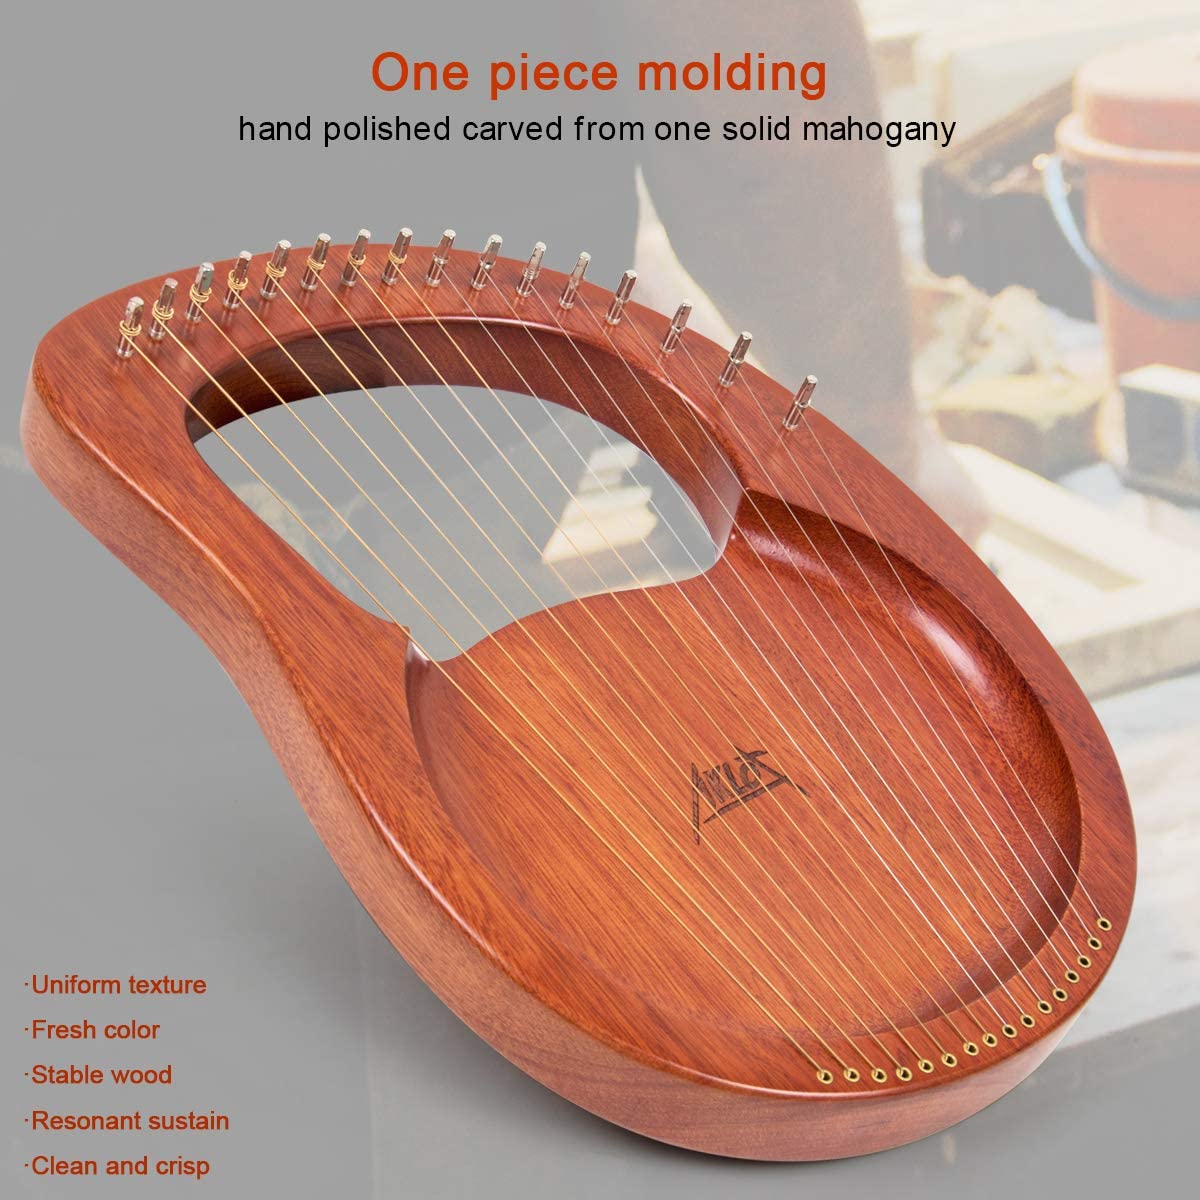 Lyre Harp, AKLOT 16 Metal Strings Mahogany Lye Harp with Tuning Wrench and Black Gig Bag - AKLOT